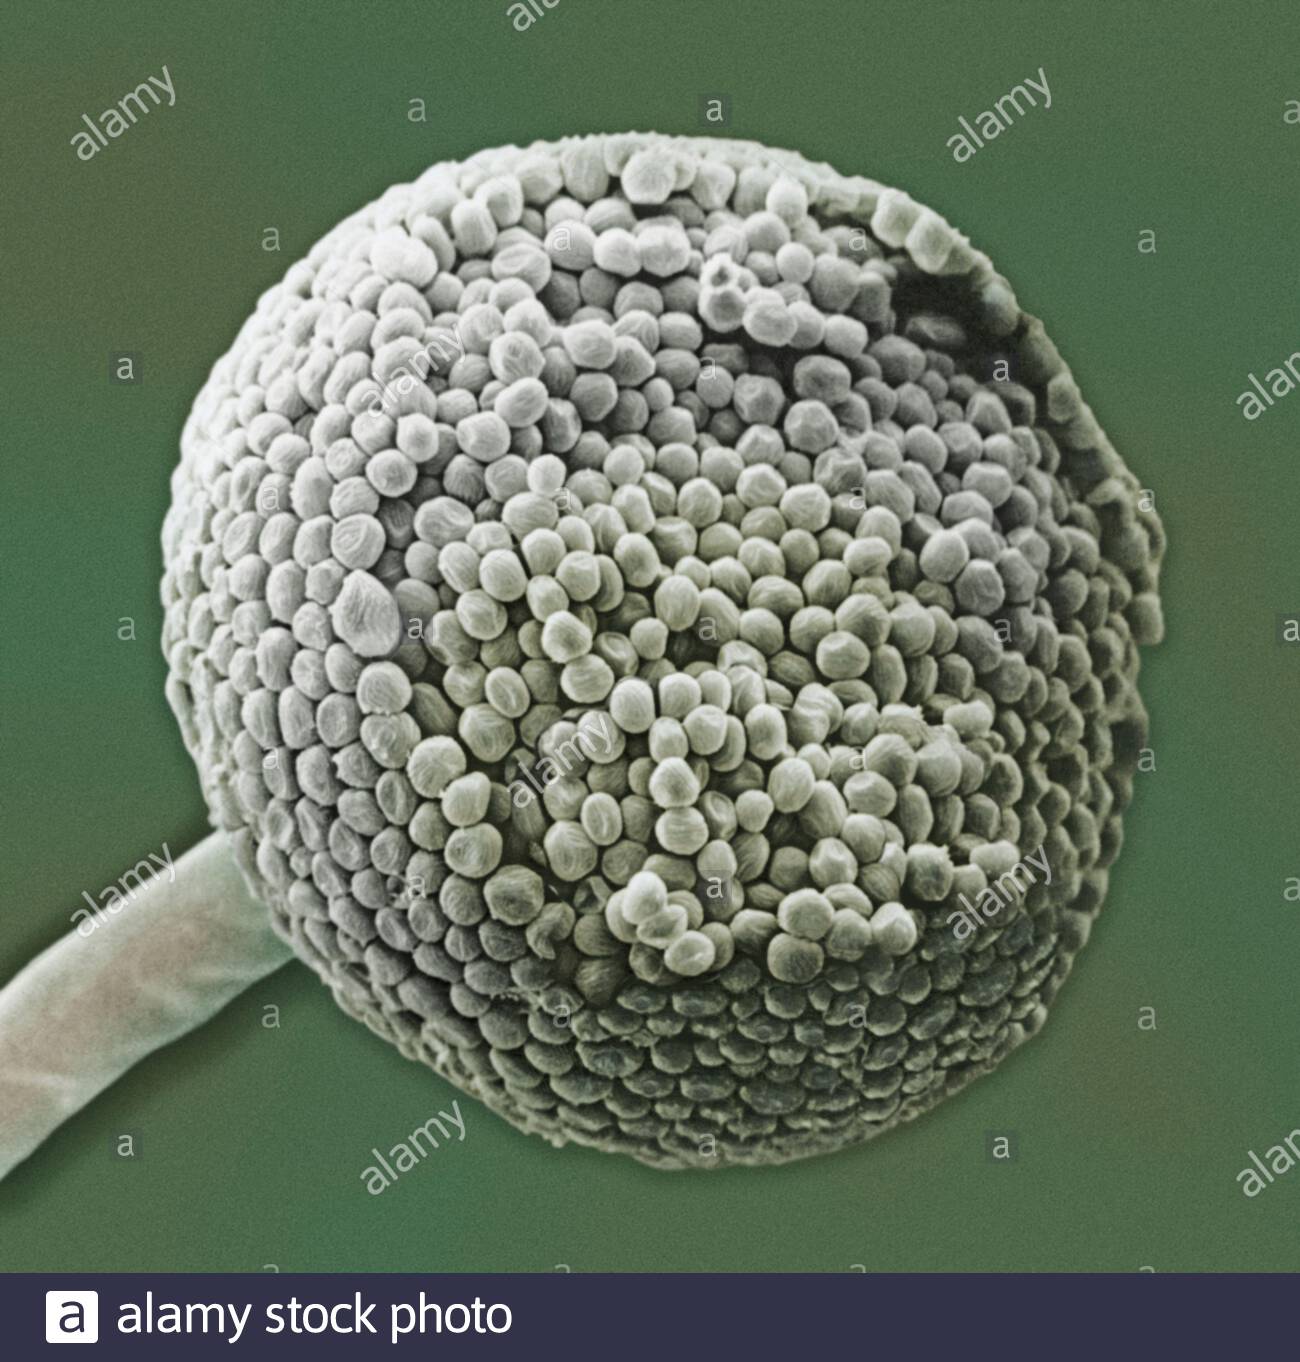 Вирус споры грибов. Споры плесневых грибов. Плесень ризопус (Rhizopus oligosporus). Спора грибница под микроскопом. Споры плесени мукор под микроскопом.